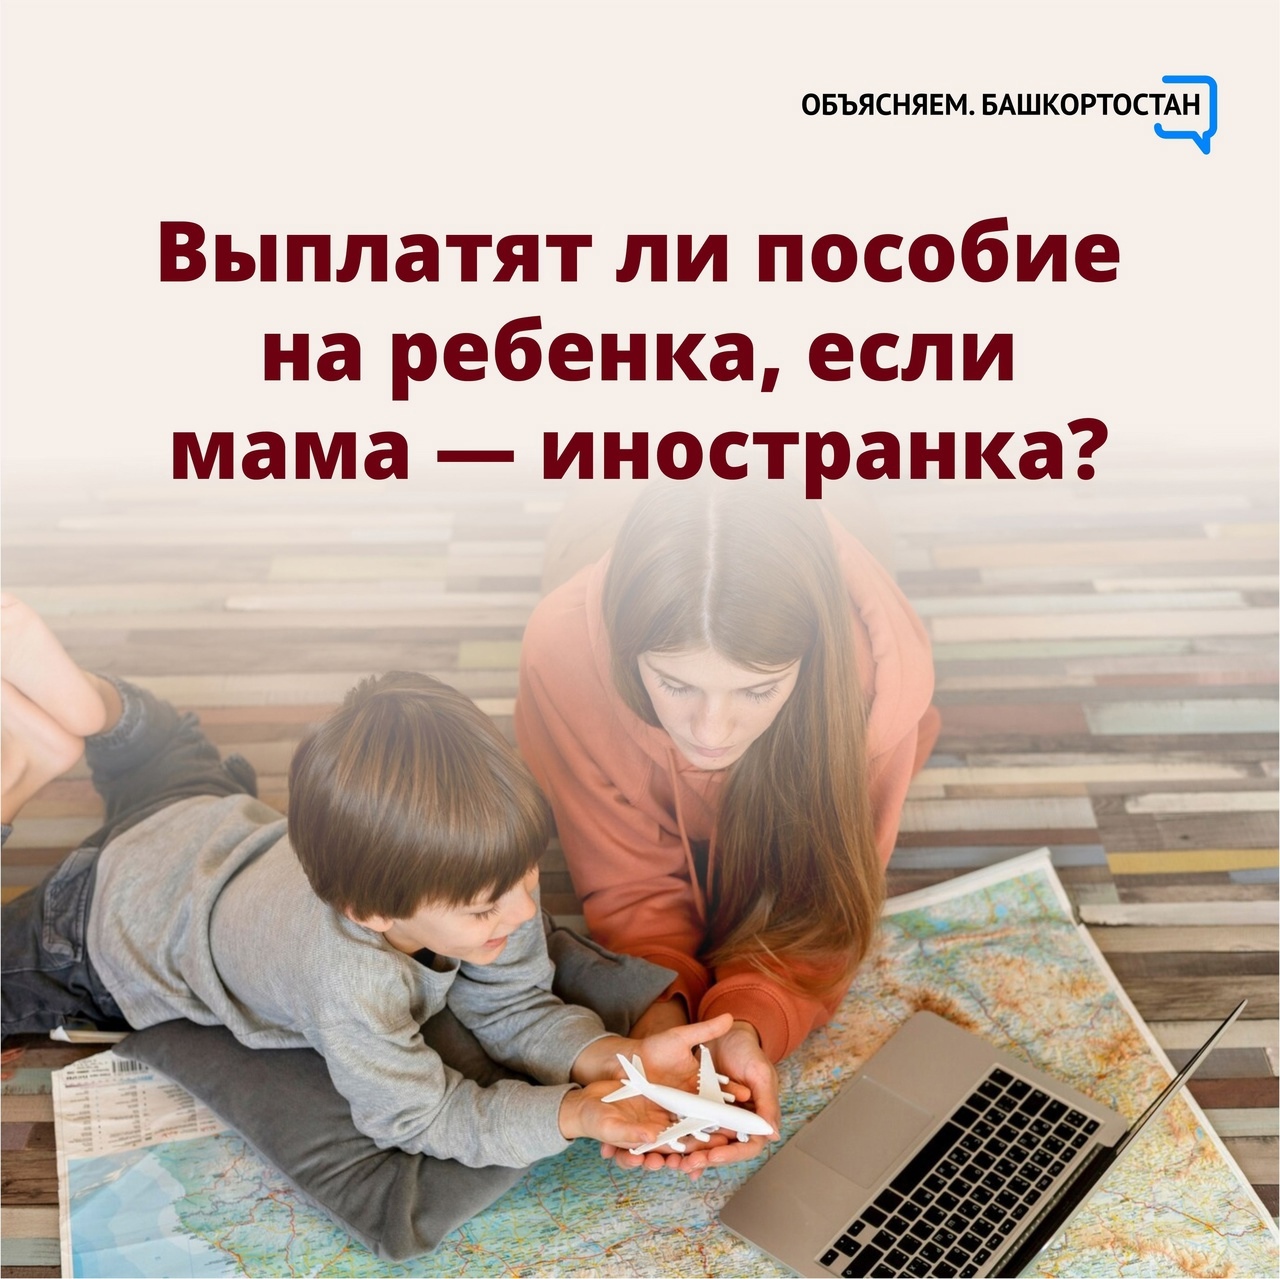 Имеет ли право на детское пособие мама с иностранным гражданством и разрешением на временное проживание в России